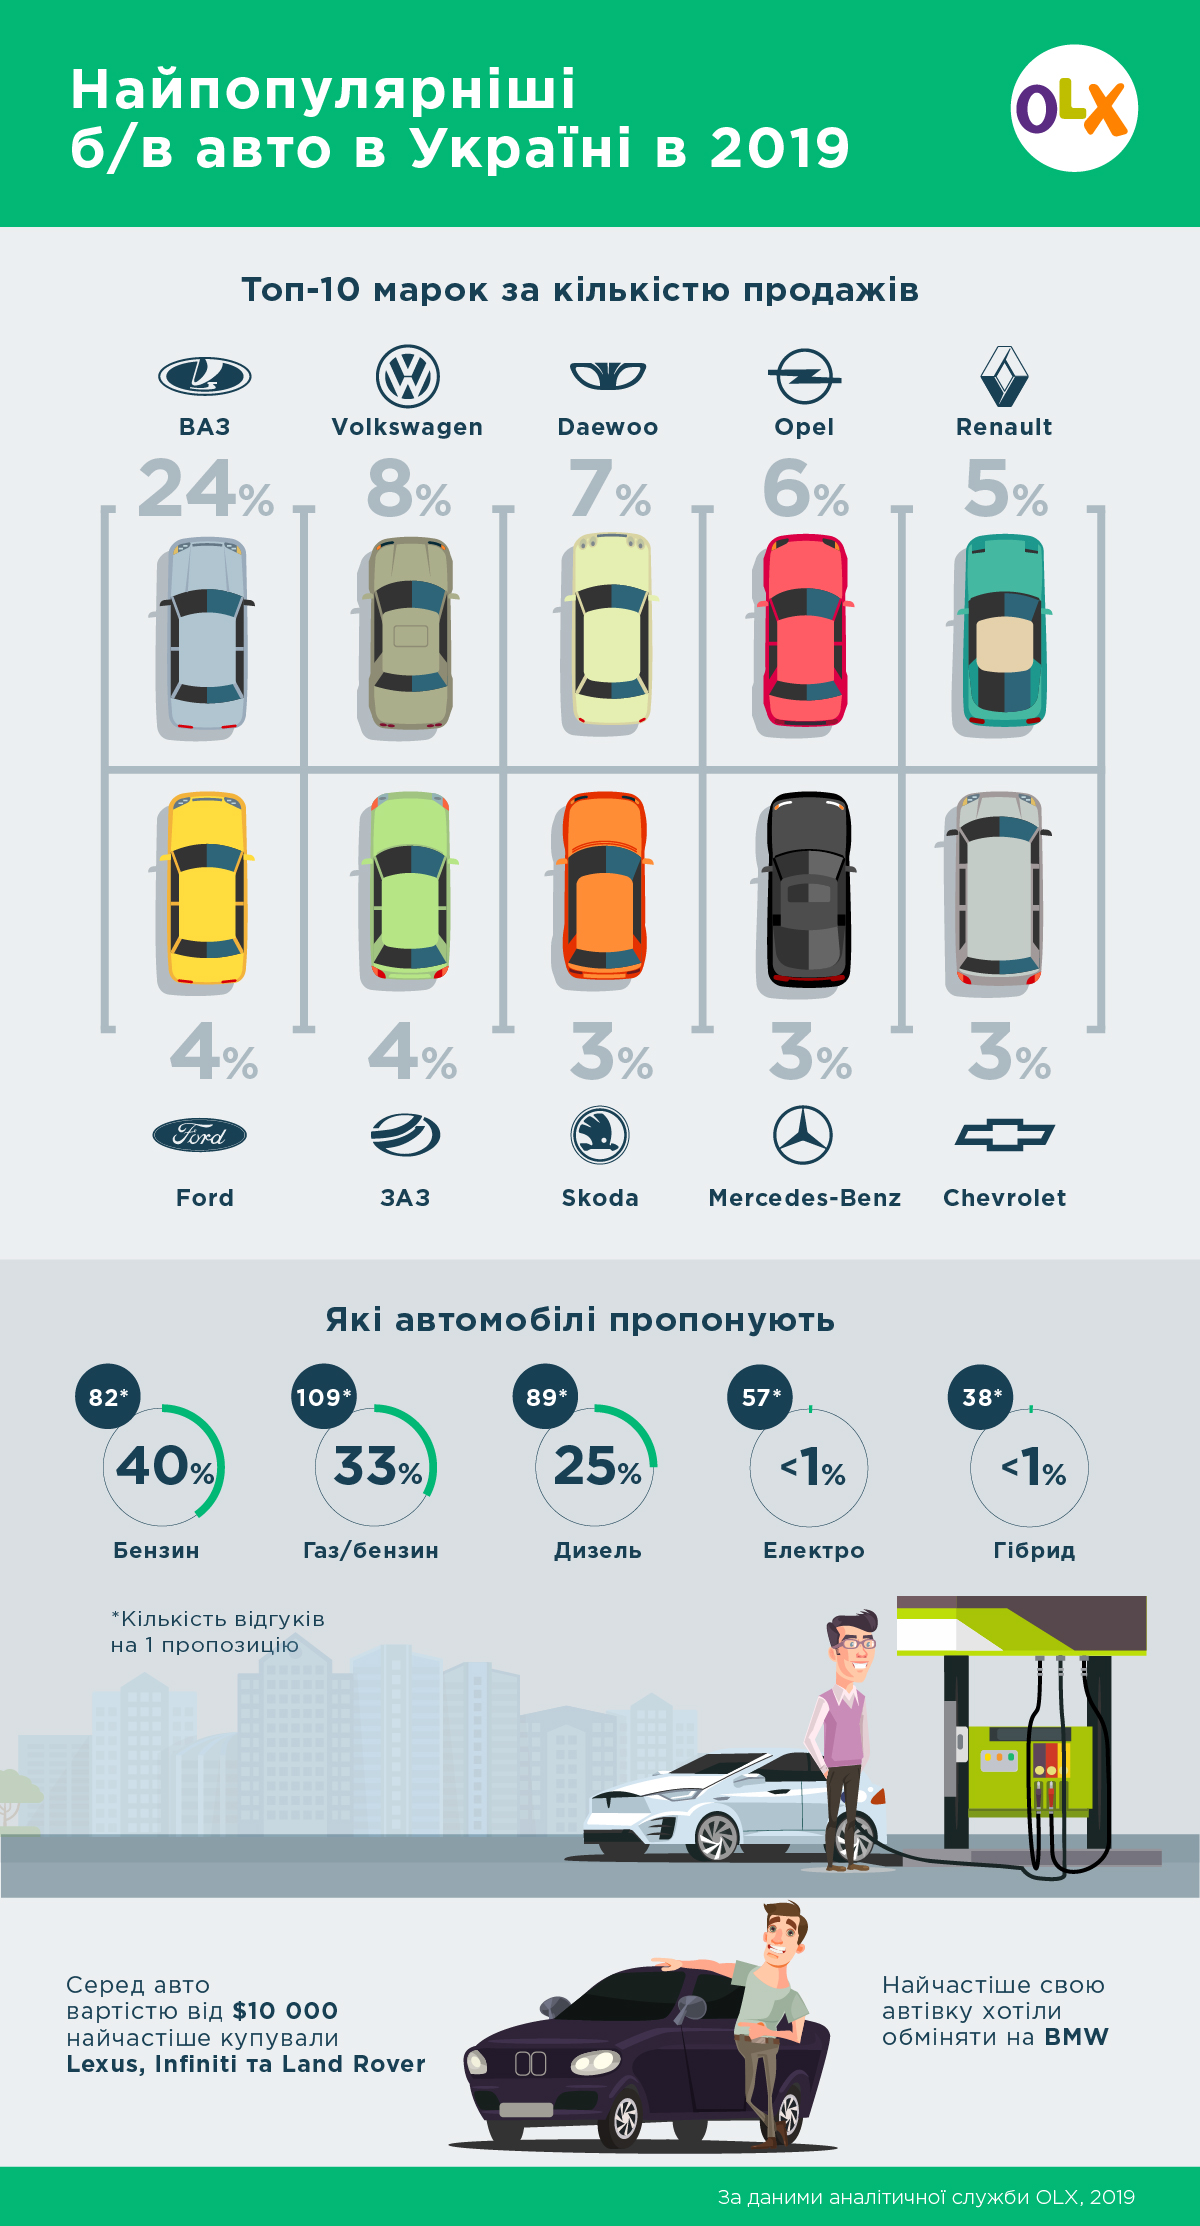 Авто на дизелі шукають частіше, ніж на бензині: підсумки року по б/в авто в Україні